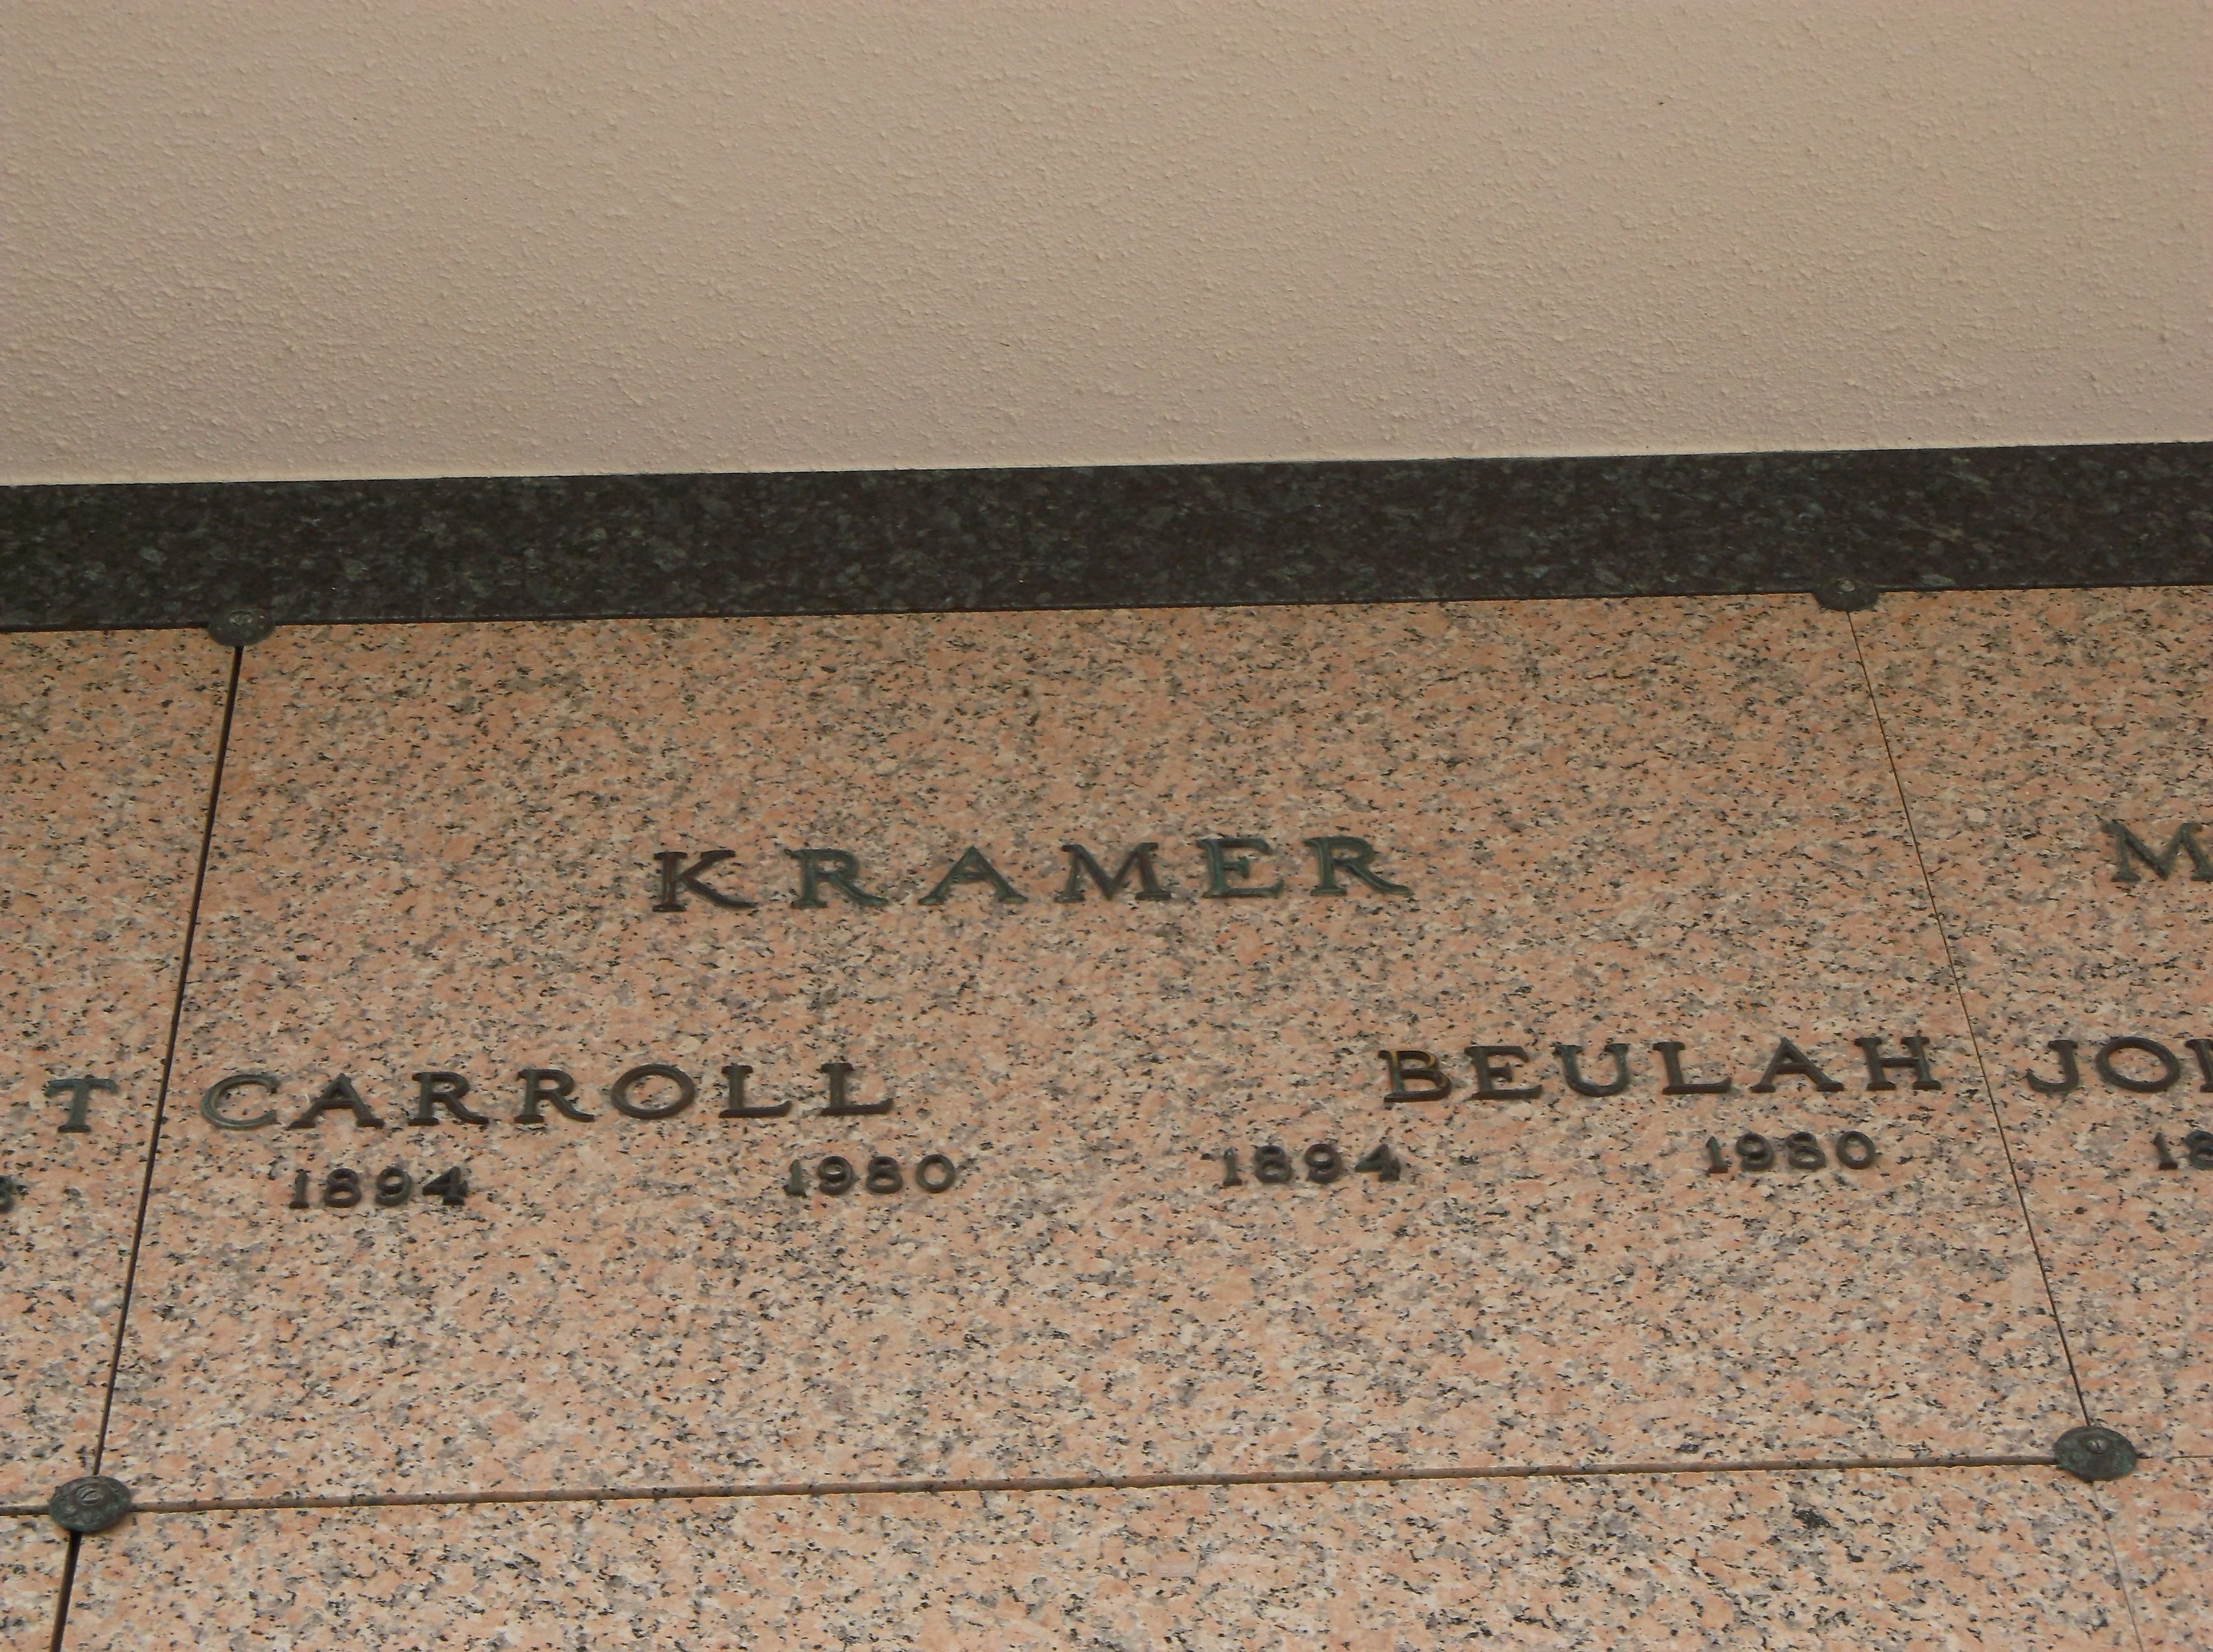 Carroll Kramer